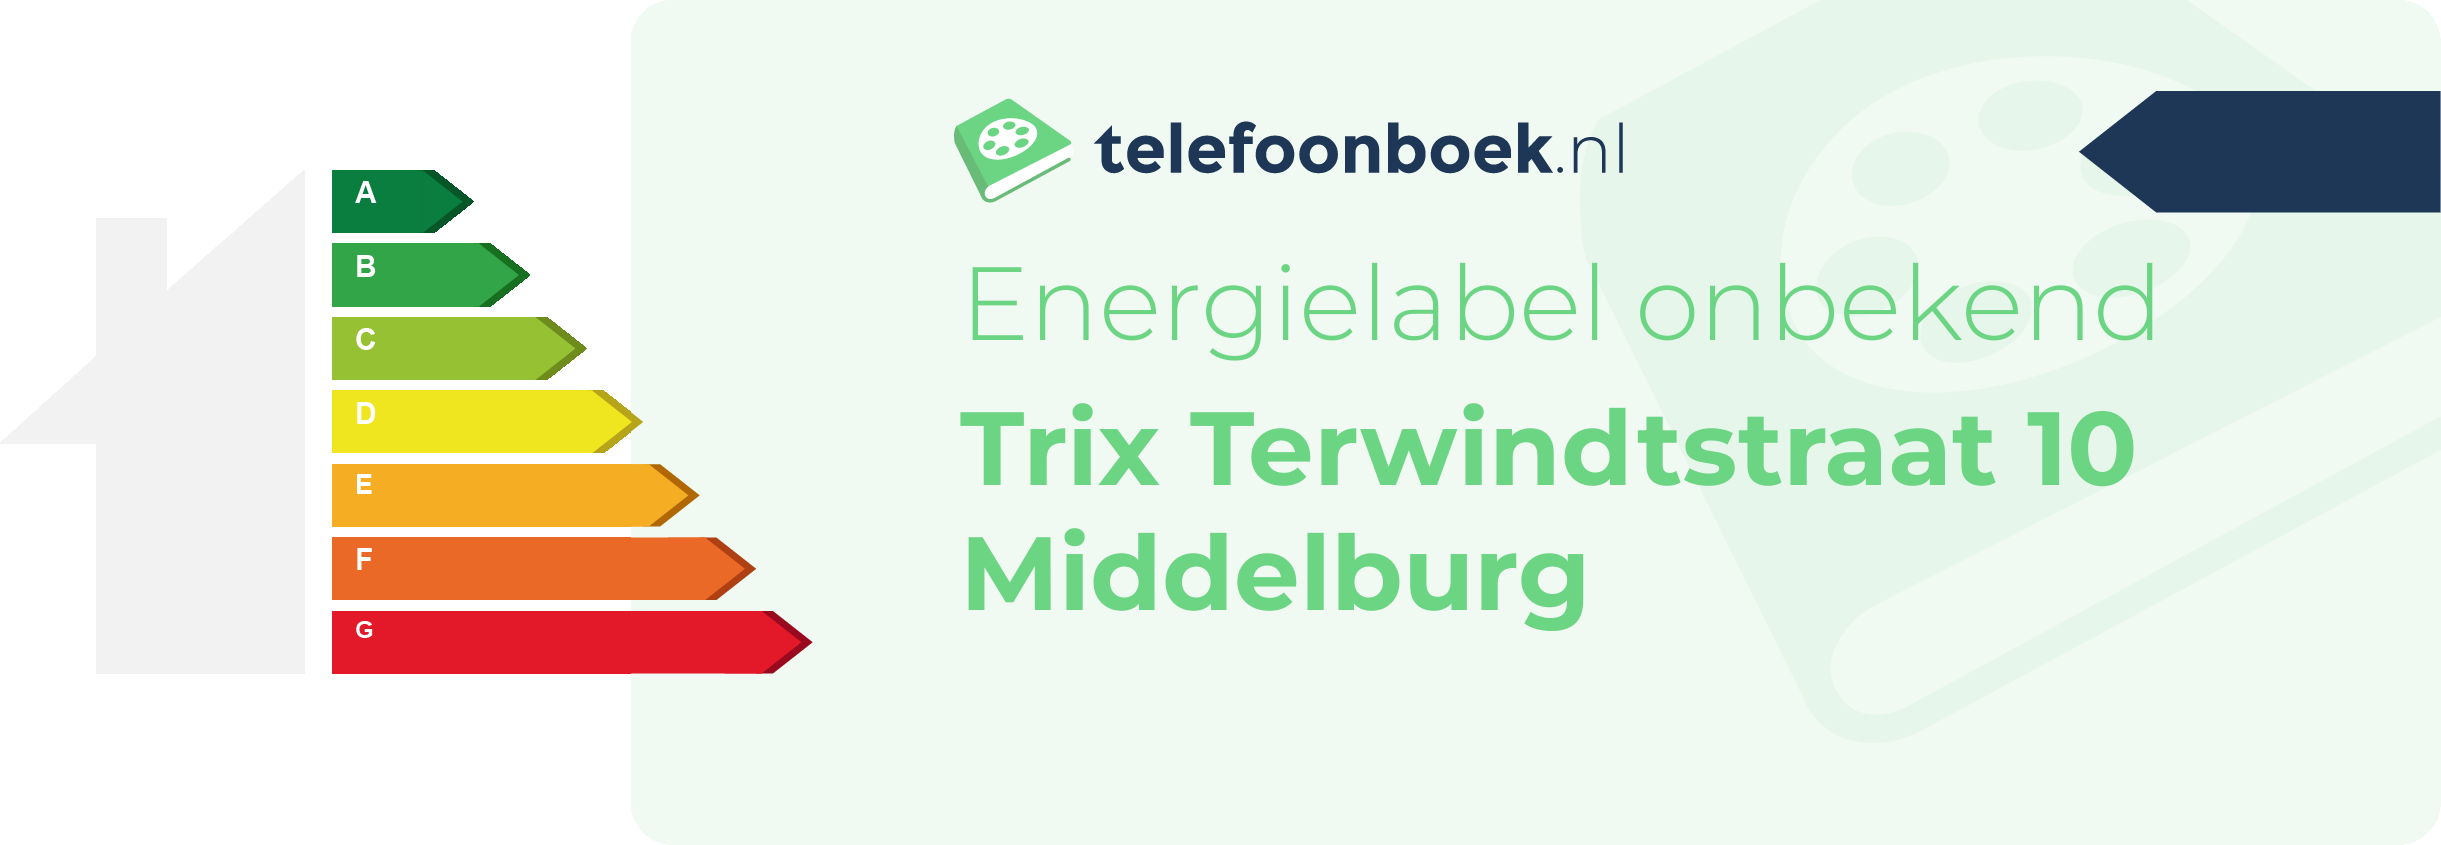 Energielabel Trix Terwindtstraat 10 Middelburg